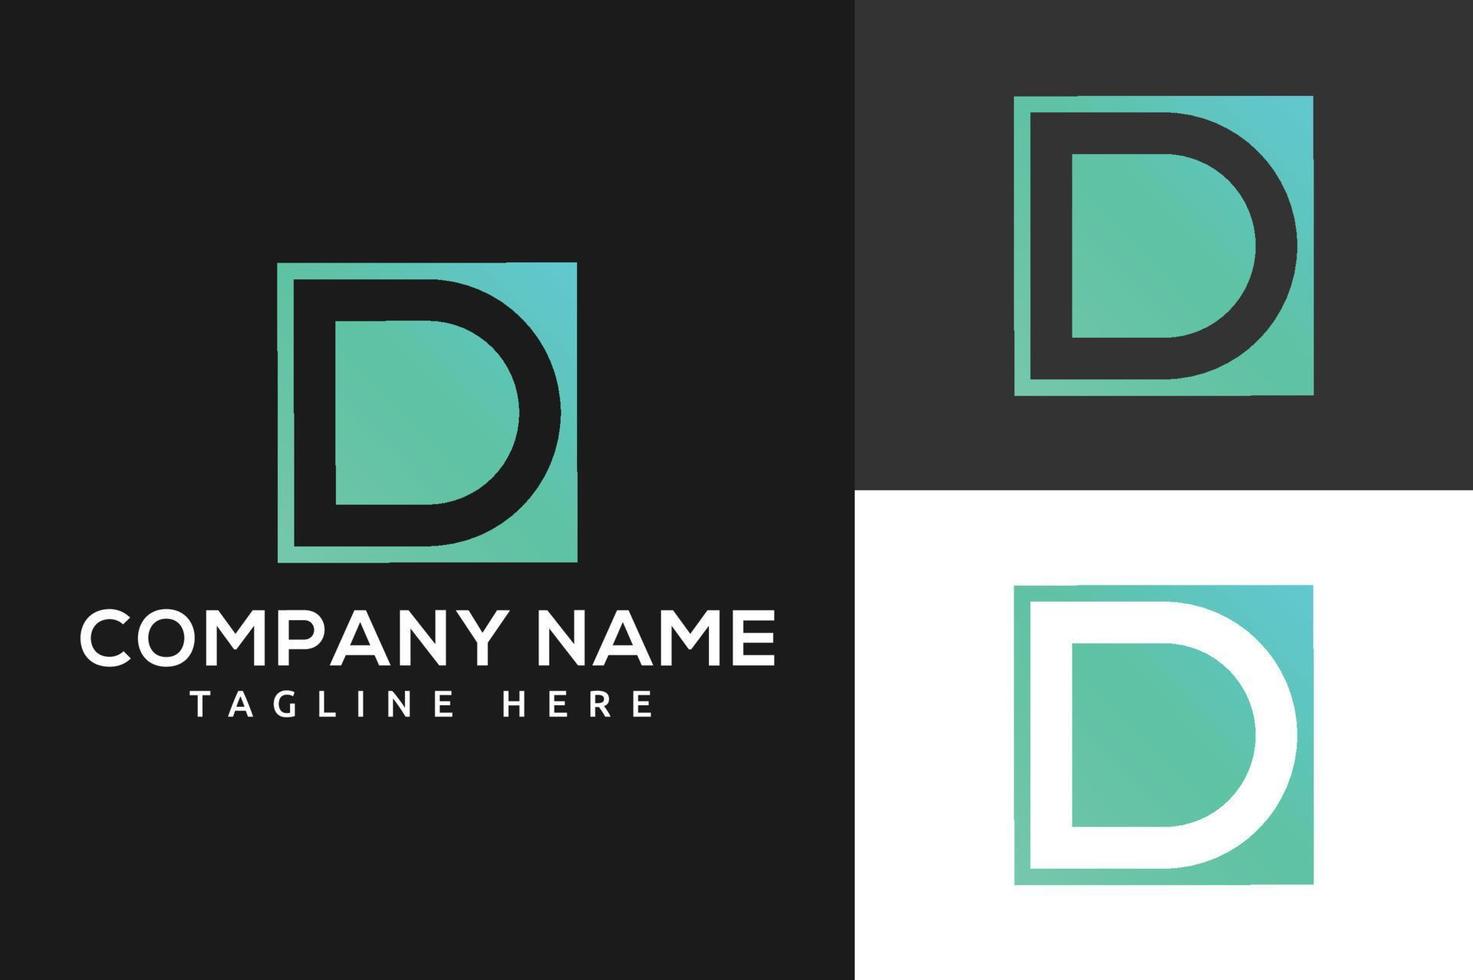 d-Buchstaben-Vektor-Logo. materialdesign, flach, strichgrafikstil .d-gradienten-alphabet-buchstaben-logo für branding und business. Verlaufsdesign für den kreativen Einsatz in Symbolbeschriftungen vektor